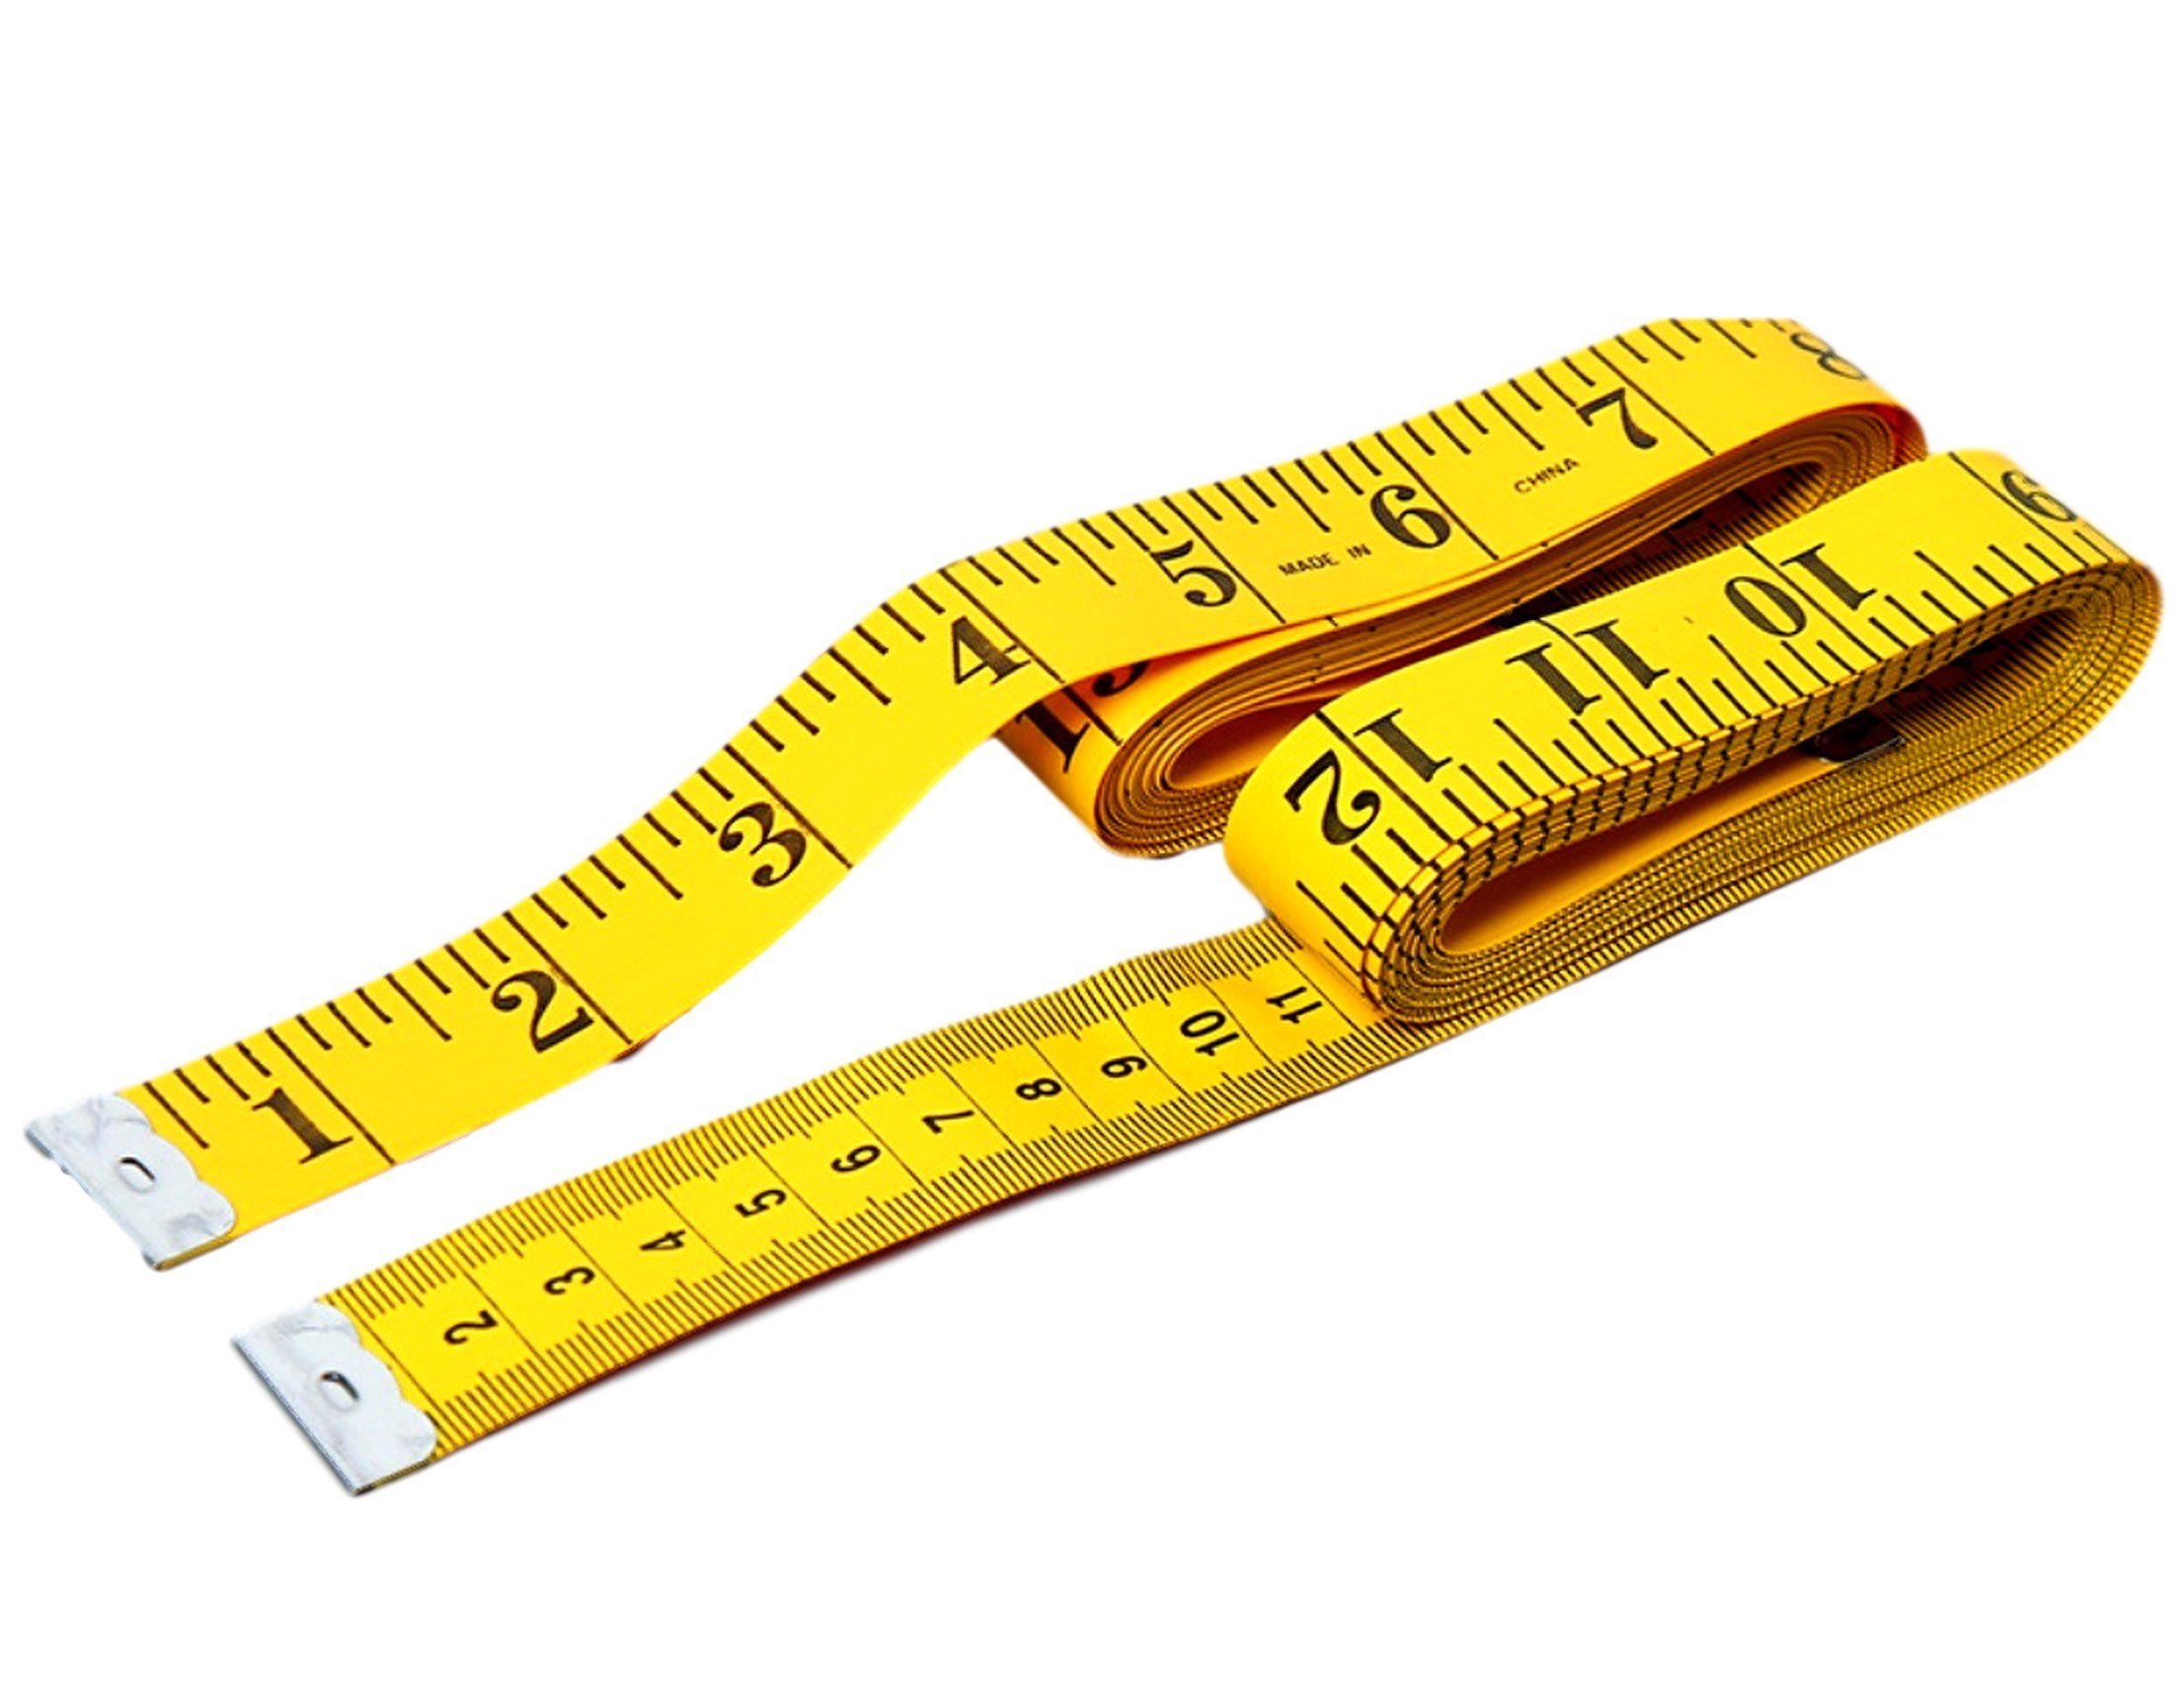 Nähen Schneidermaßband zum messen, 3m oder BAYLI flexibles Körperumfang Maßband